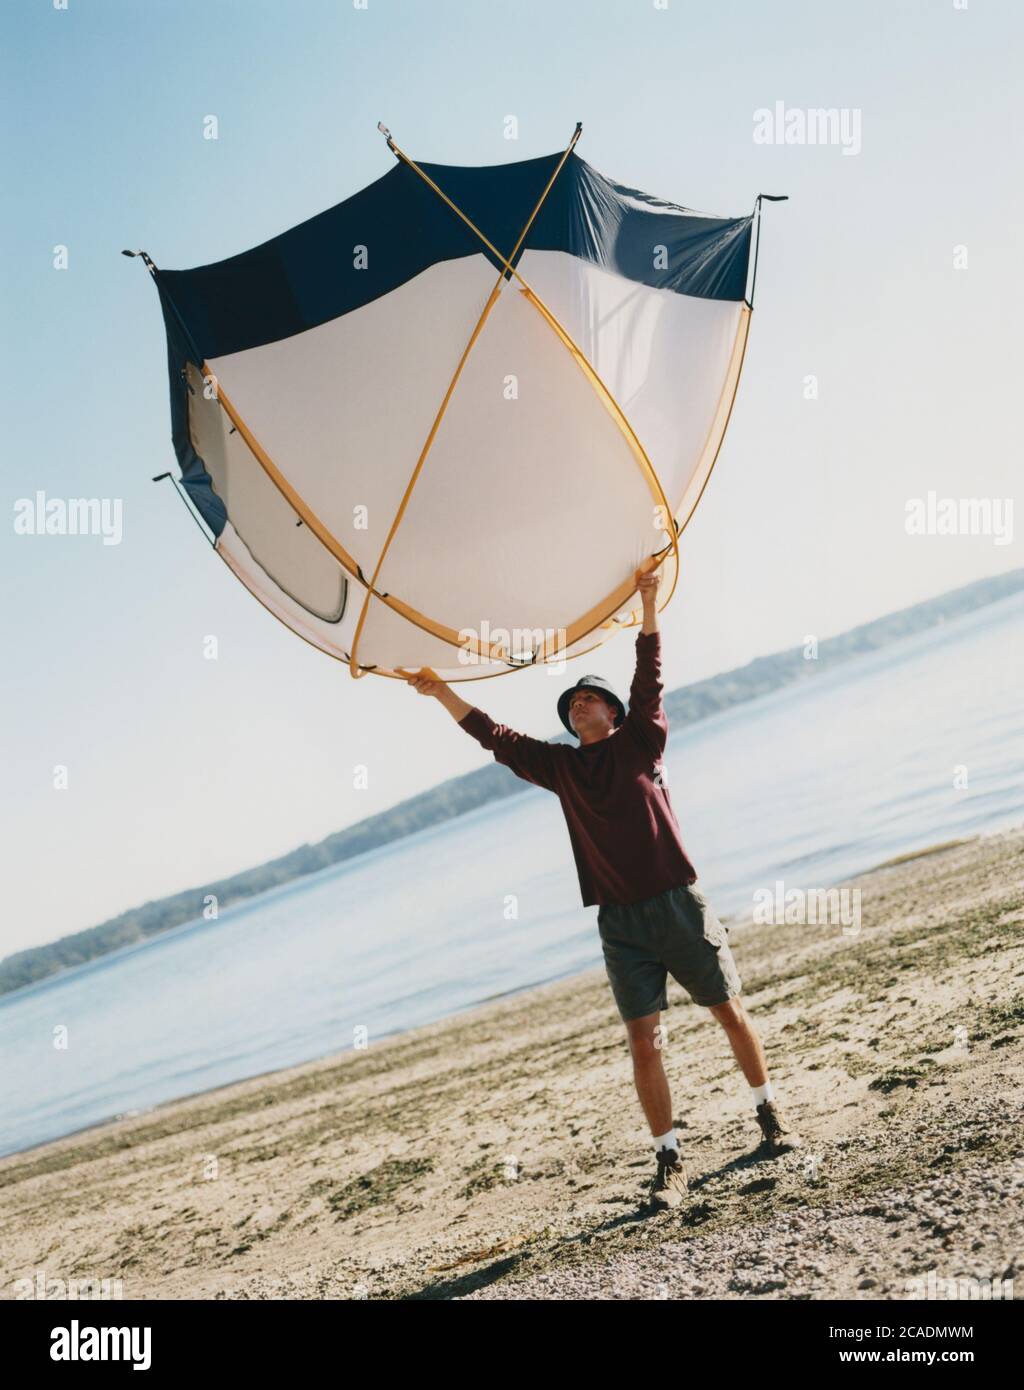 Un uomo che tiene una piccola tenda a cupola sopra la testa, in piedi sulla spiaggia Foto Stock